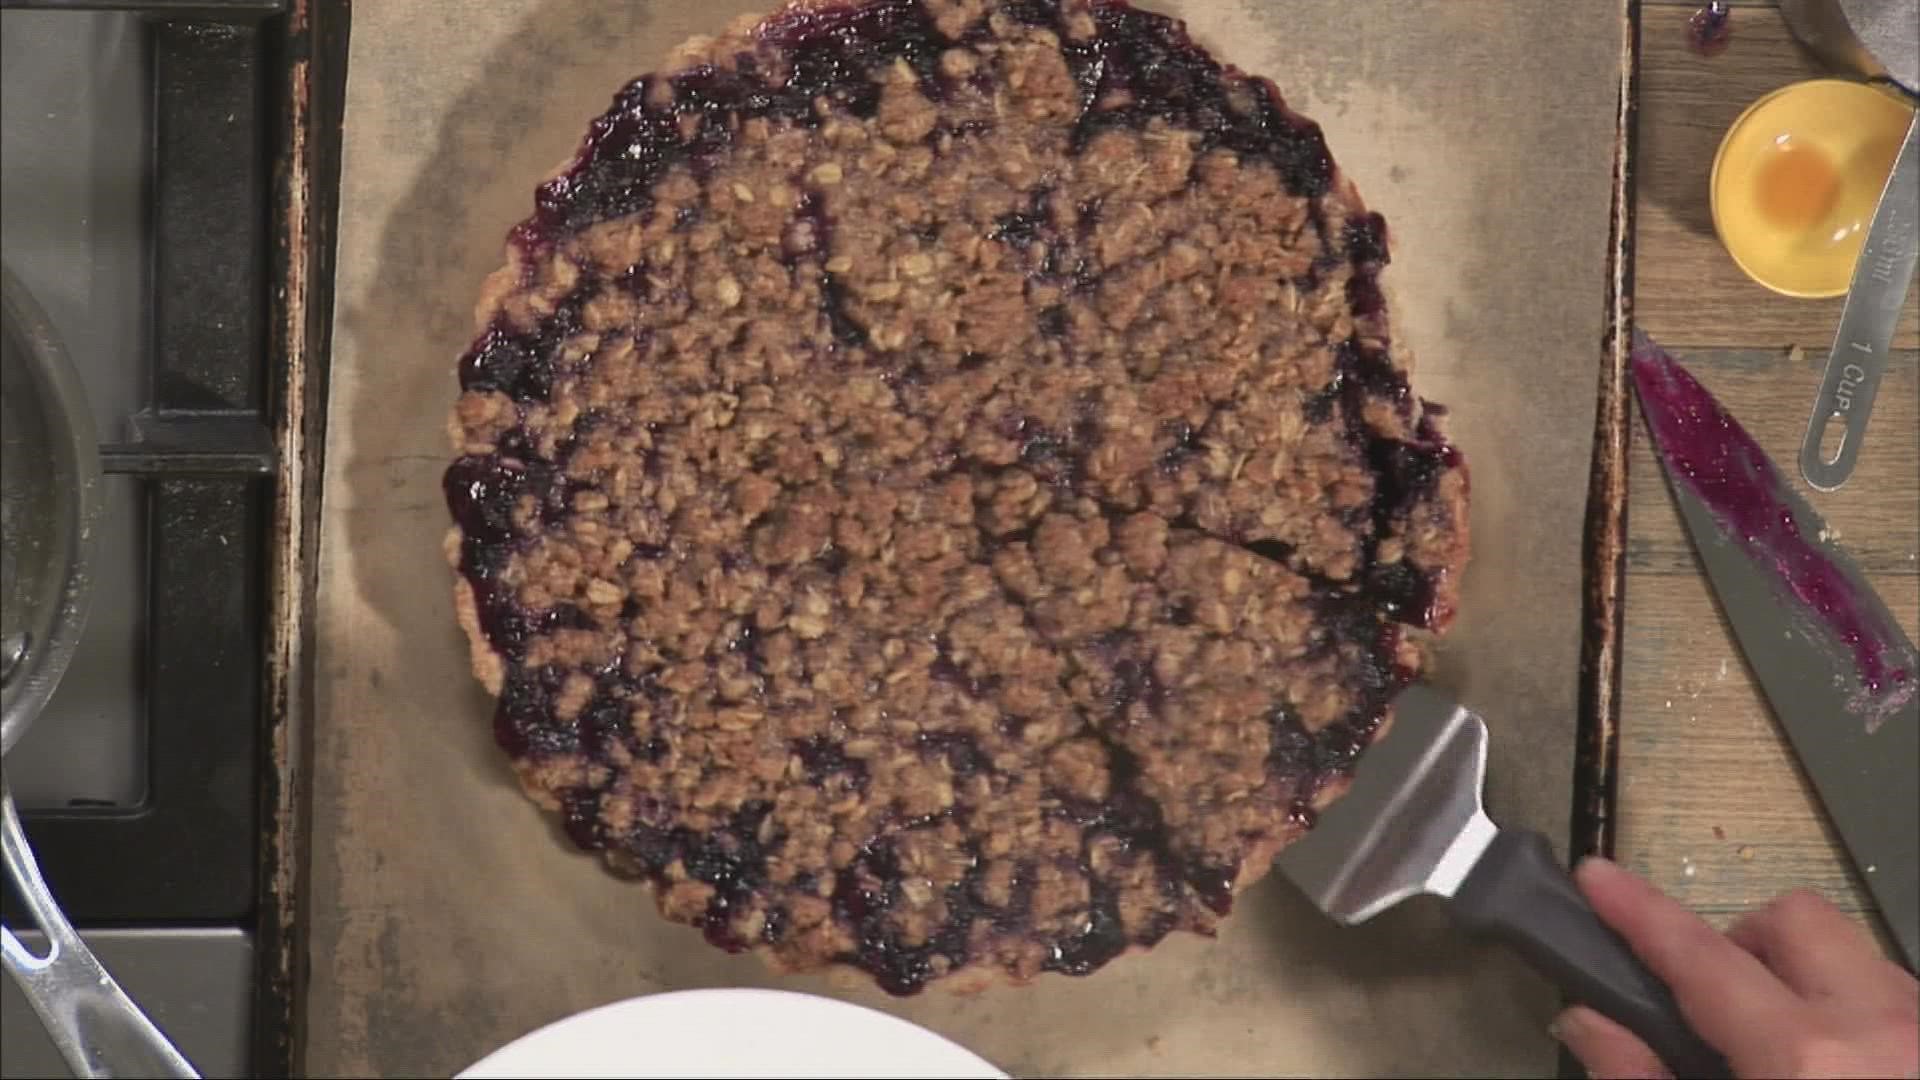 Chef Kate Shaffer shares her blueberry tart recipe on 207.